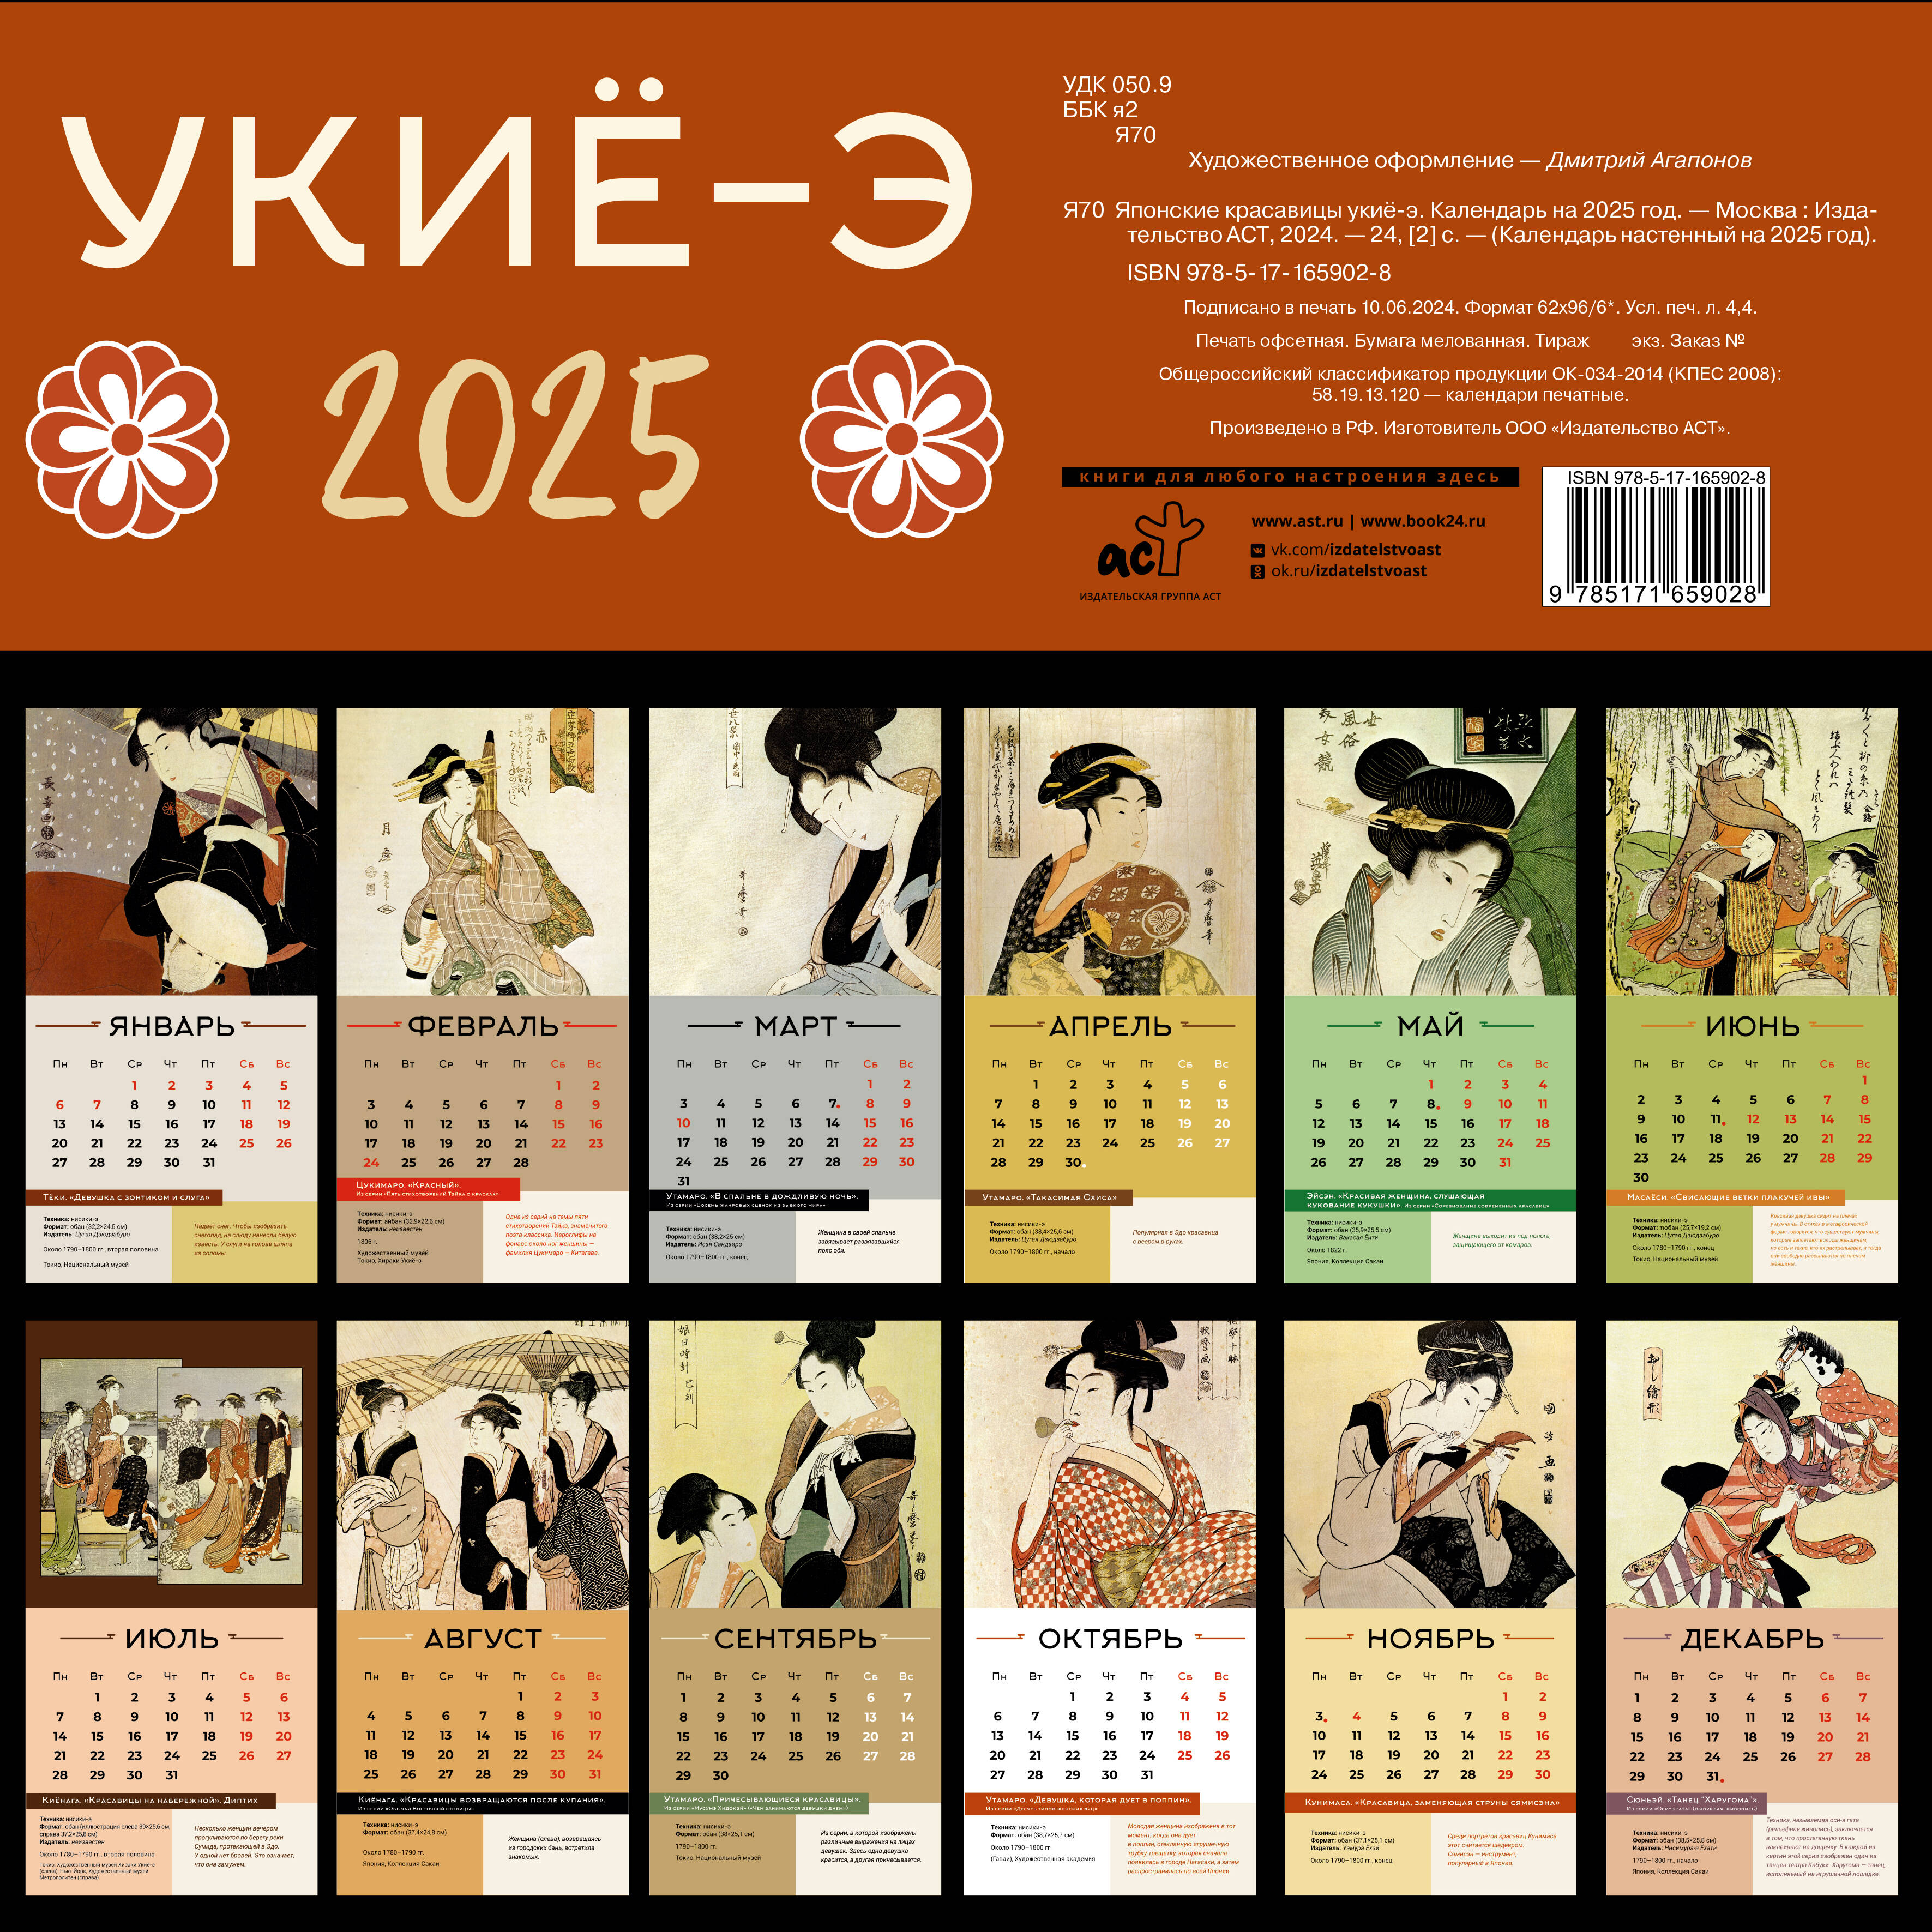  Японские красавицы укиё-э. Календарь на 2025 год - страница 3